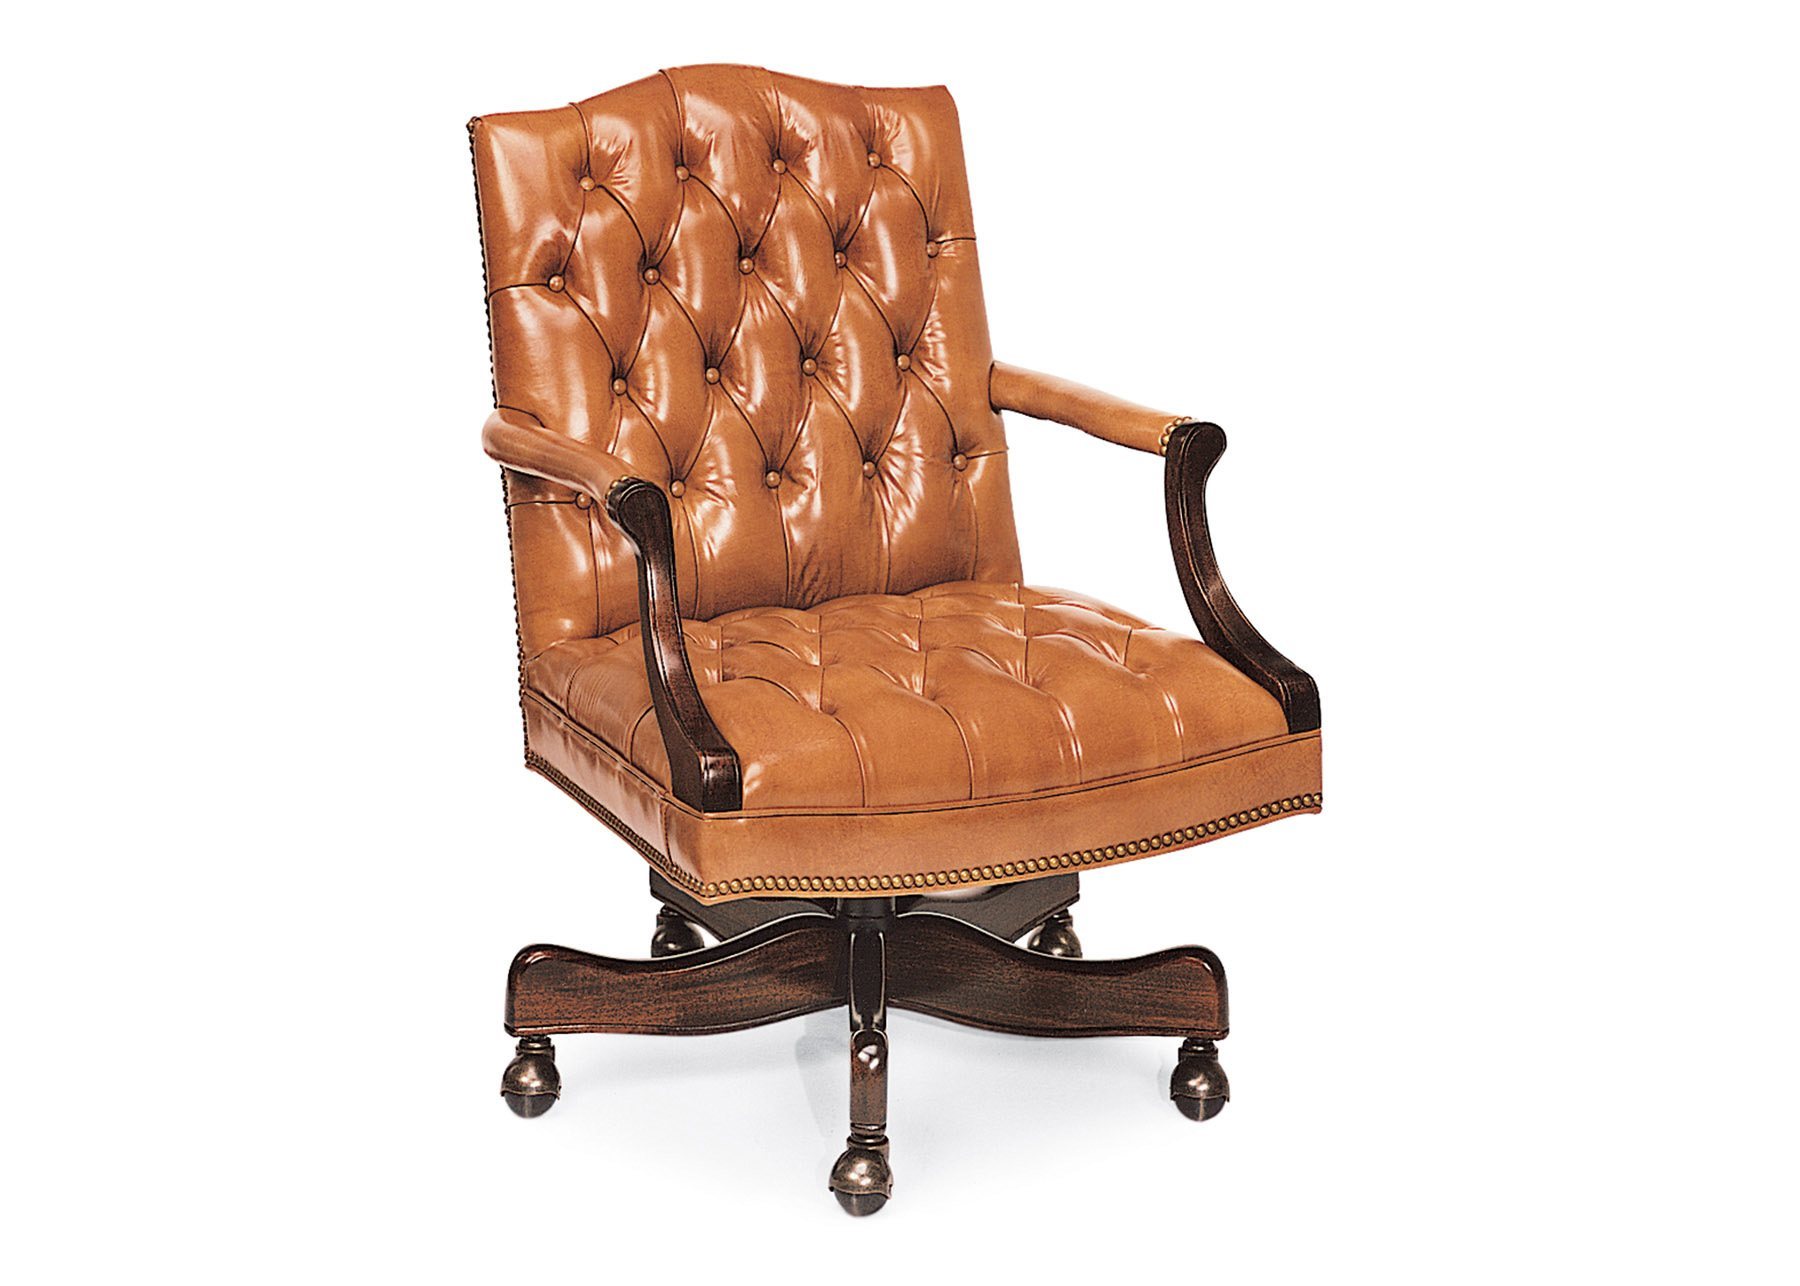 Cabot Wrenn Legends Norfolk Swivel Chair